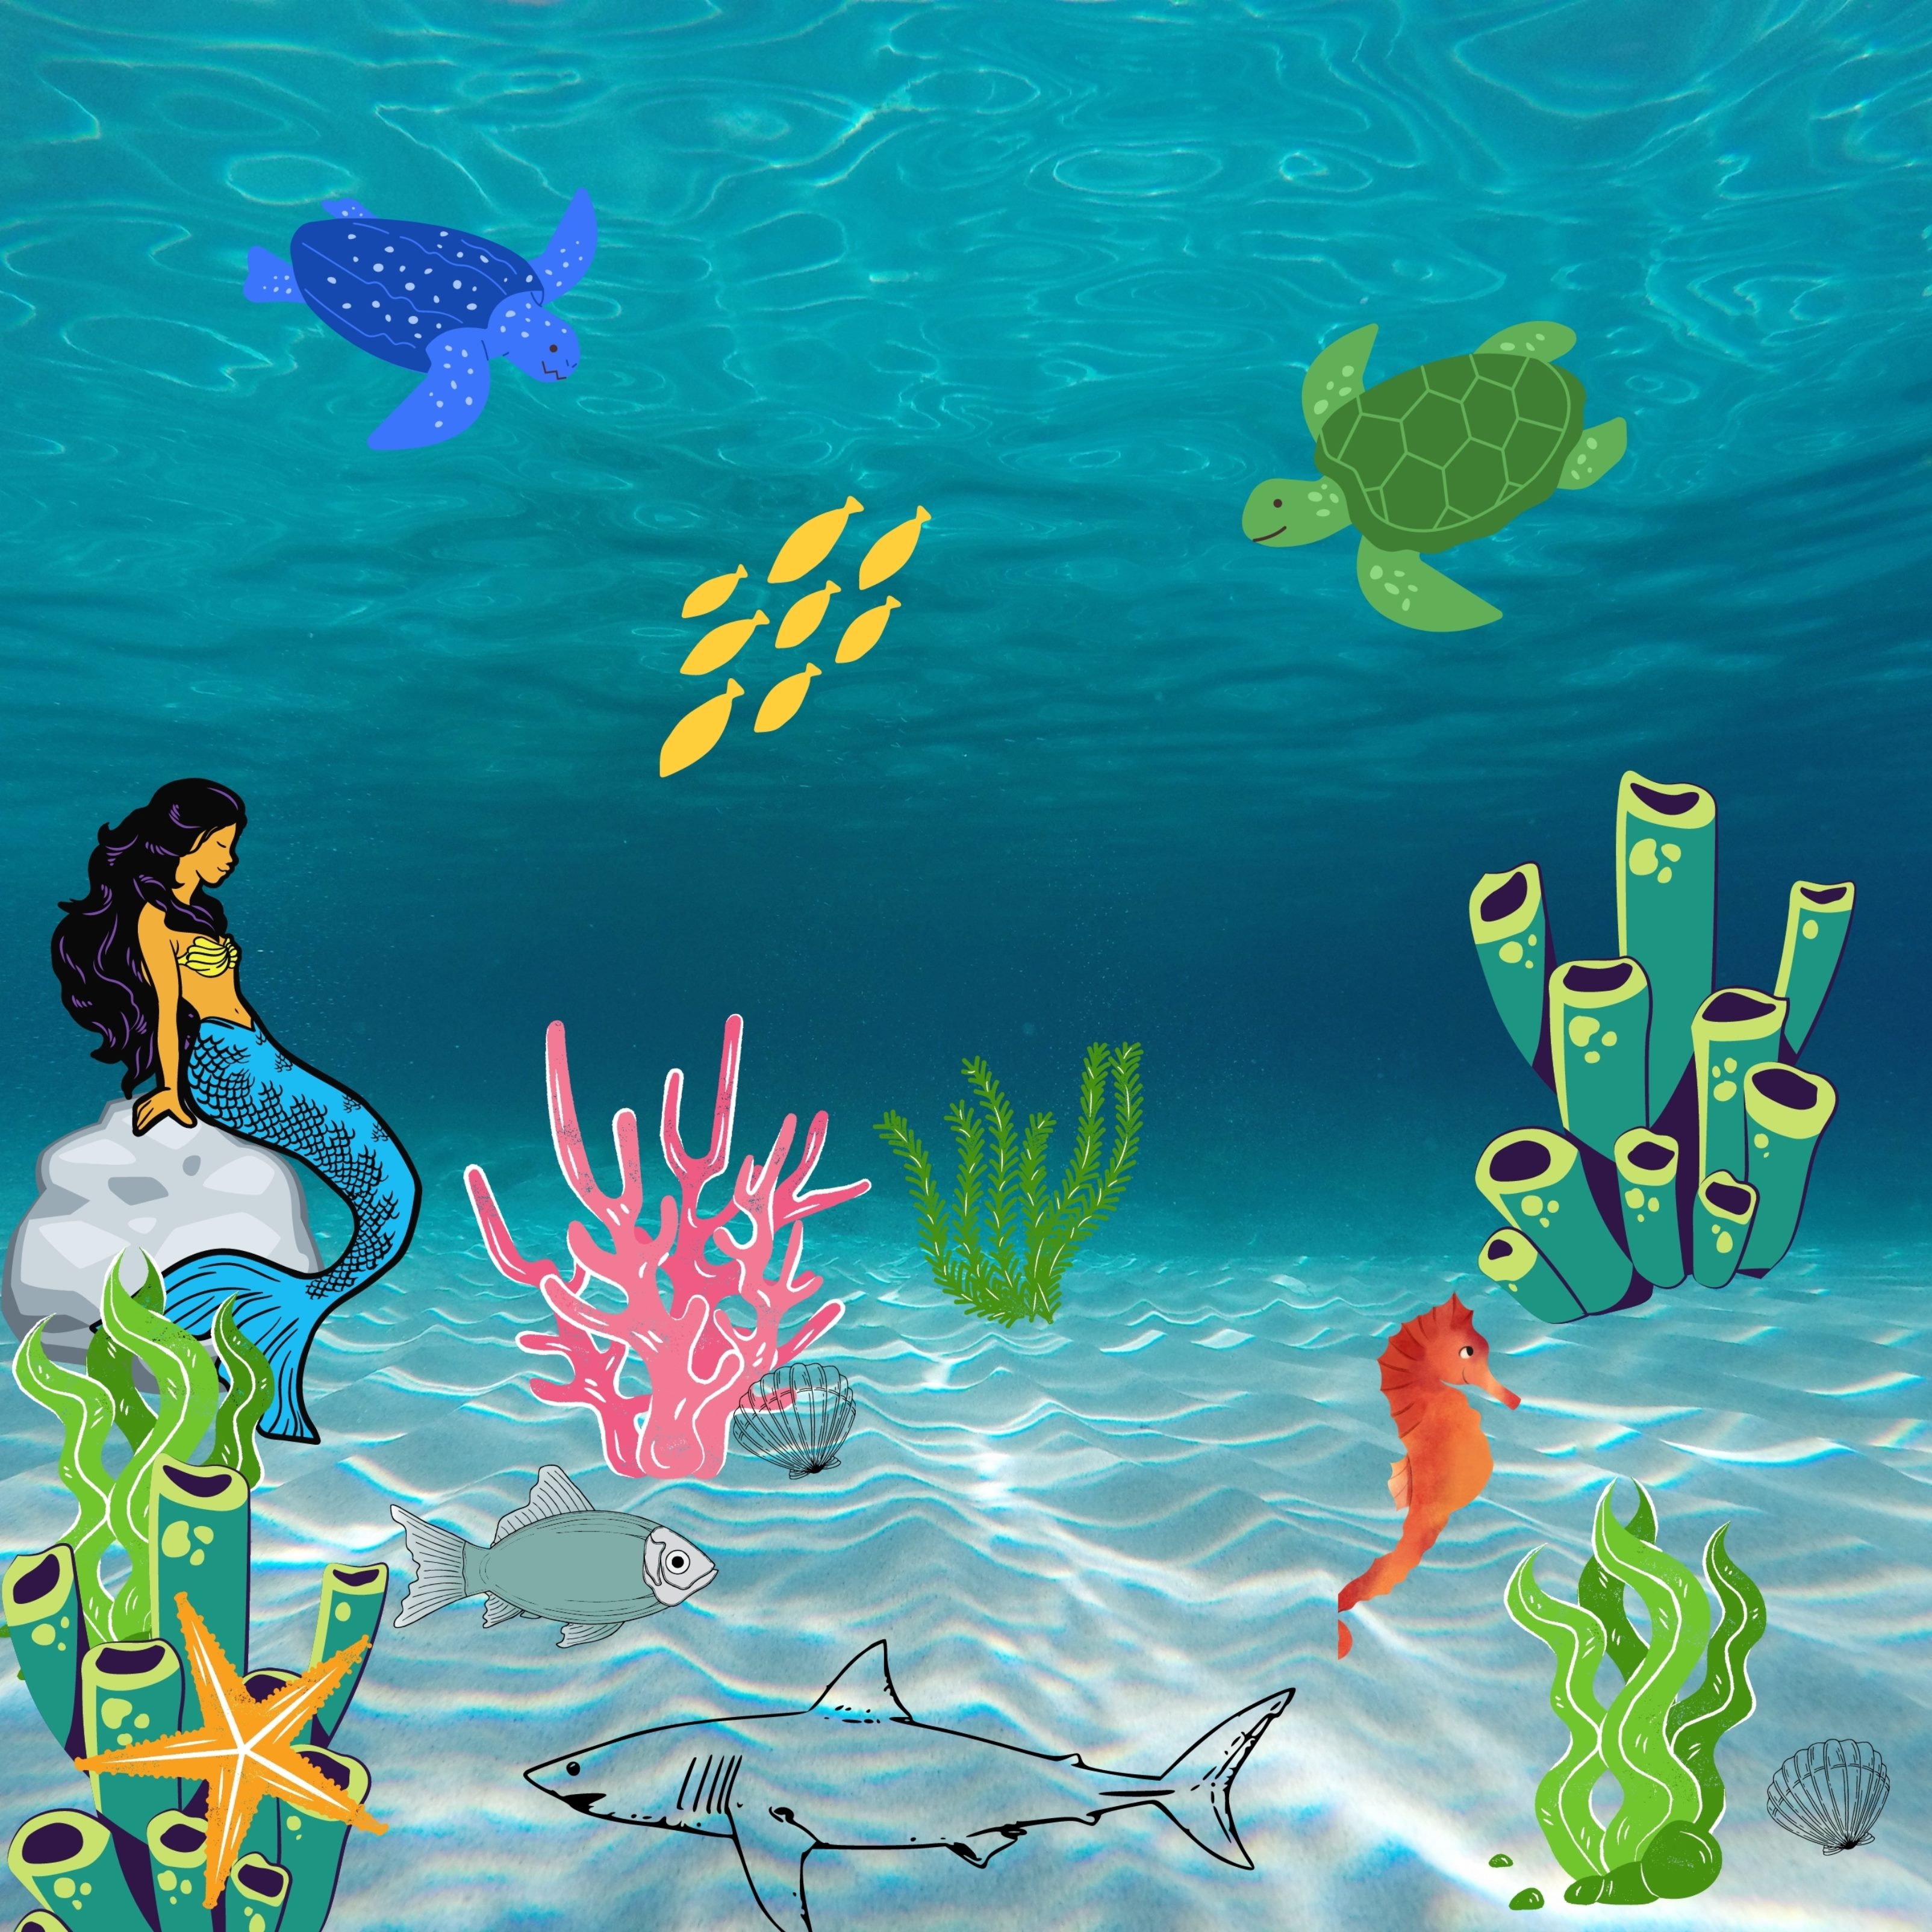 iPad Wallpapers Underwater Creatures iPad Wallpaper 3208x3208 px